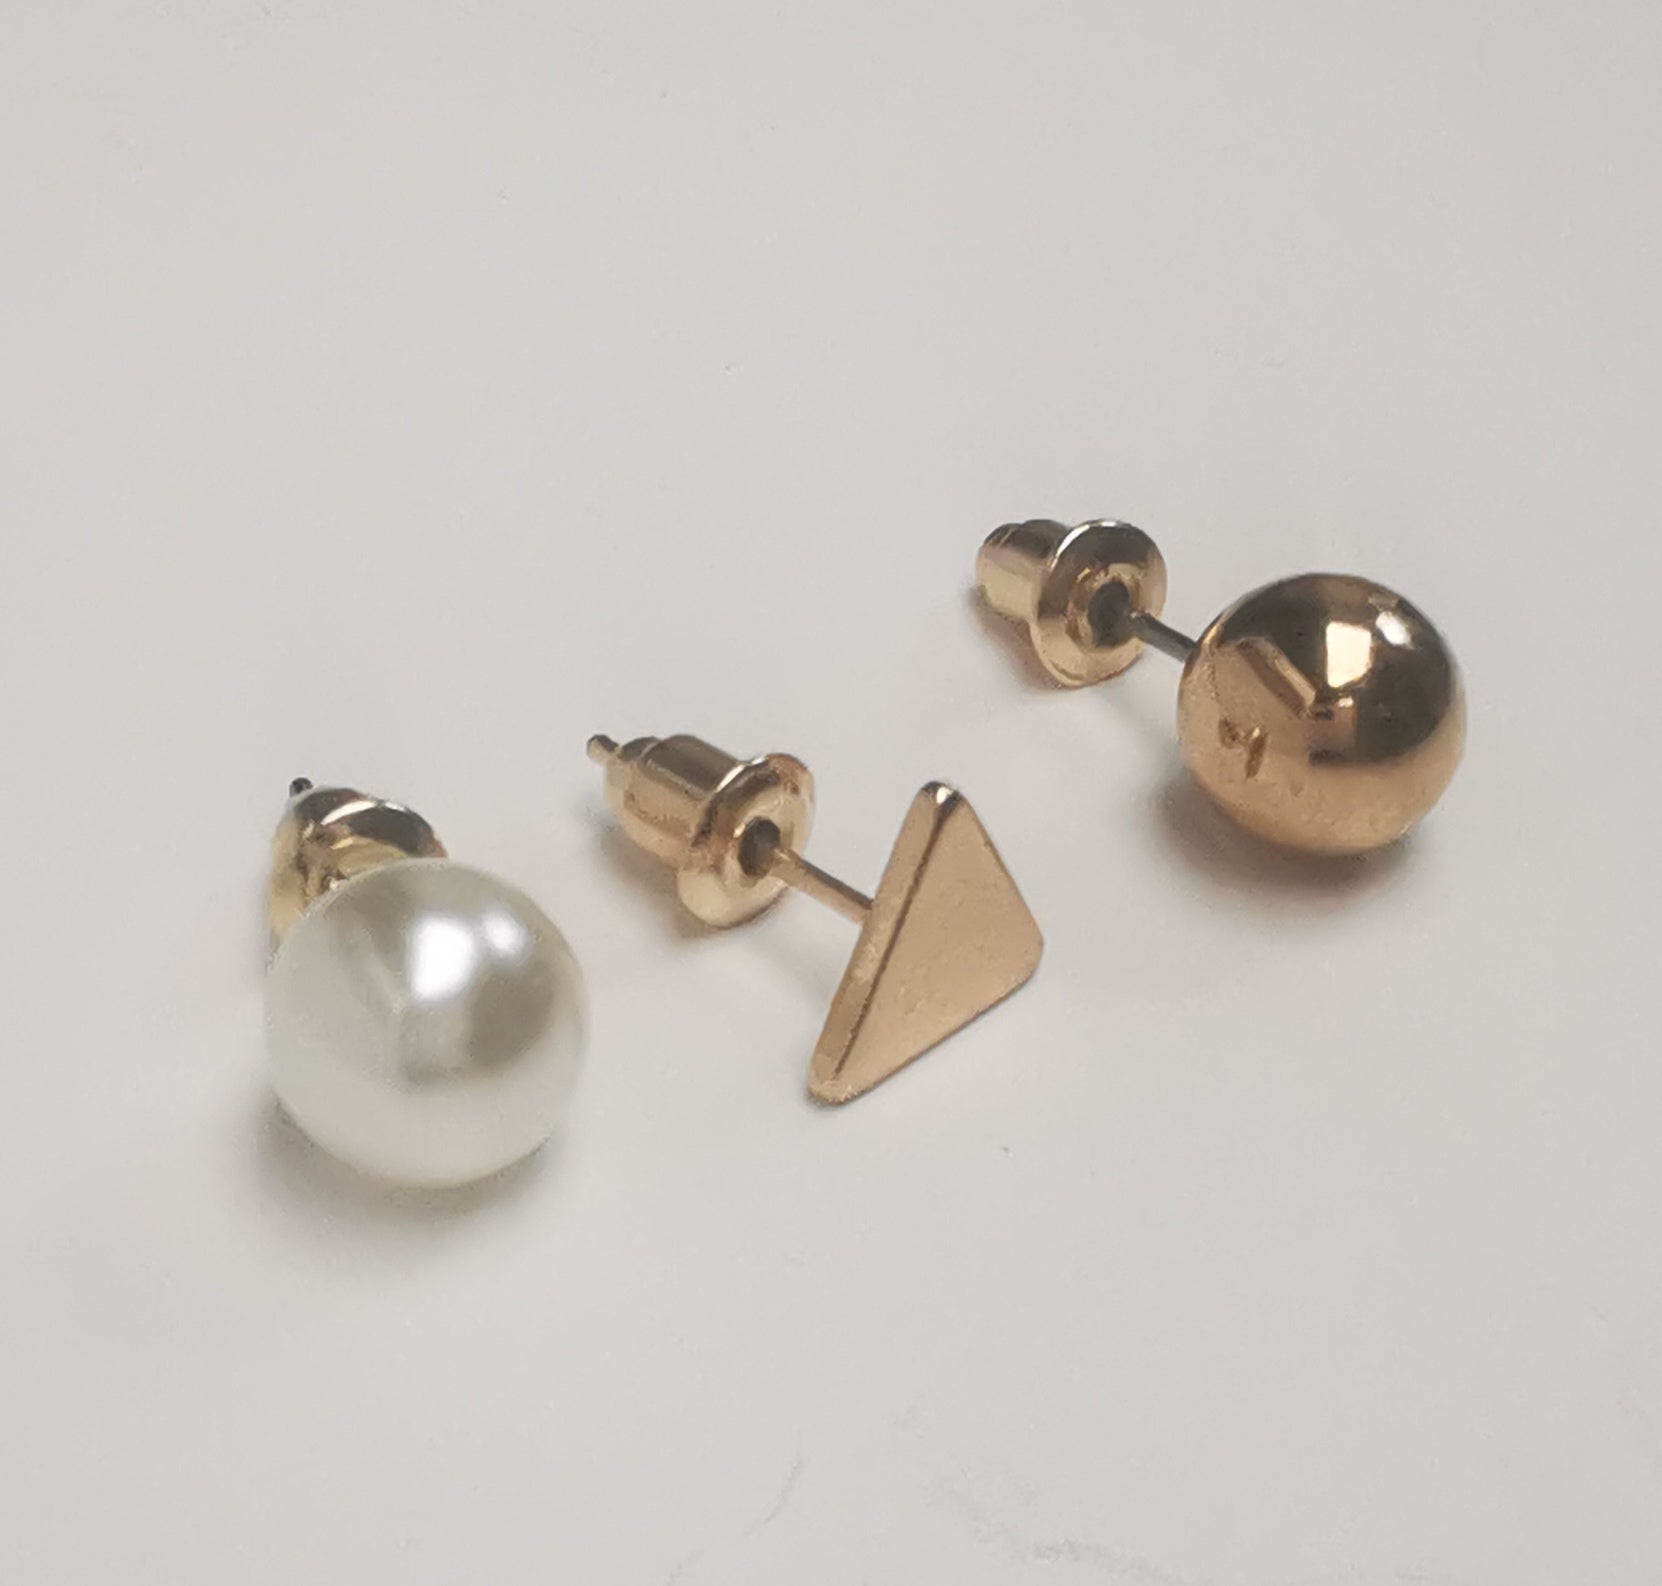 Trios de boucles d'oreilles clous fantaisie, la première est un triangle doré, la deuxième une perle fantaisie et la troisième une sphère dorée. Représentées par une boucle de chaque paire, posées les unes à coté des autres, posées sur un fond blanc, vue de face un peu de gauche.